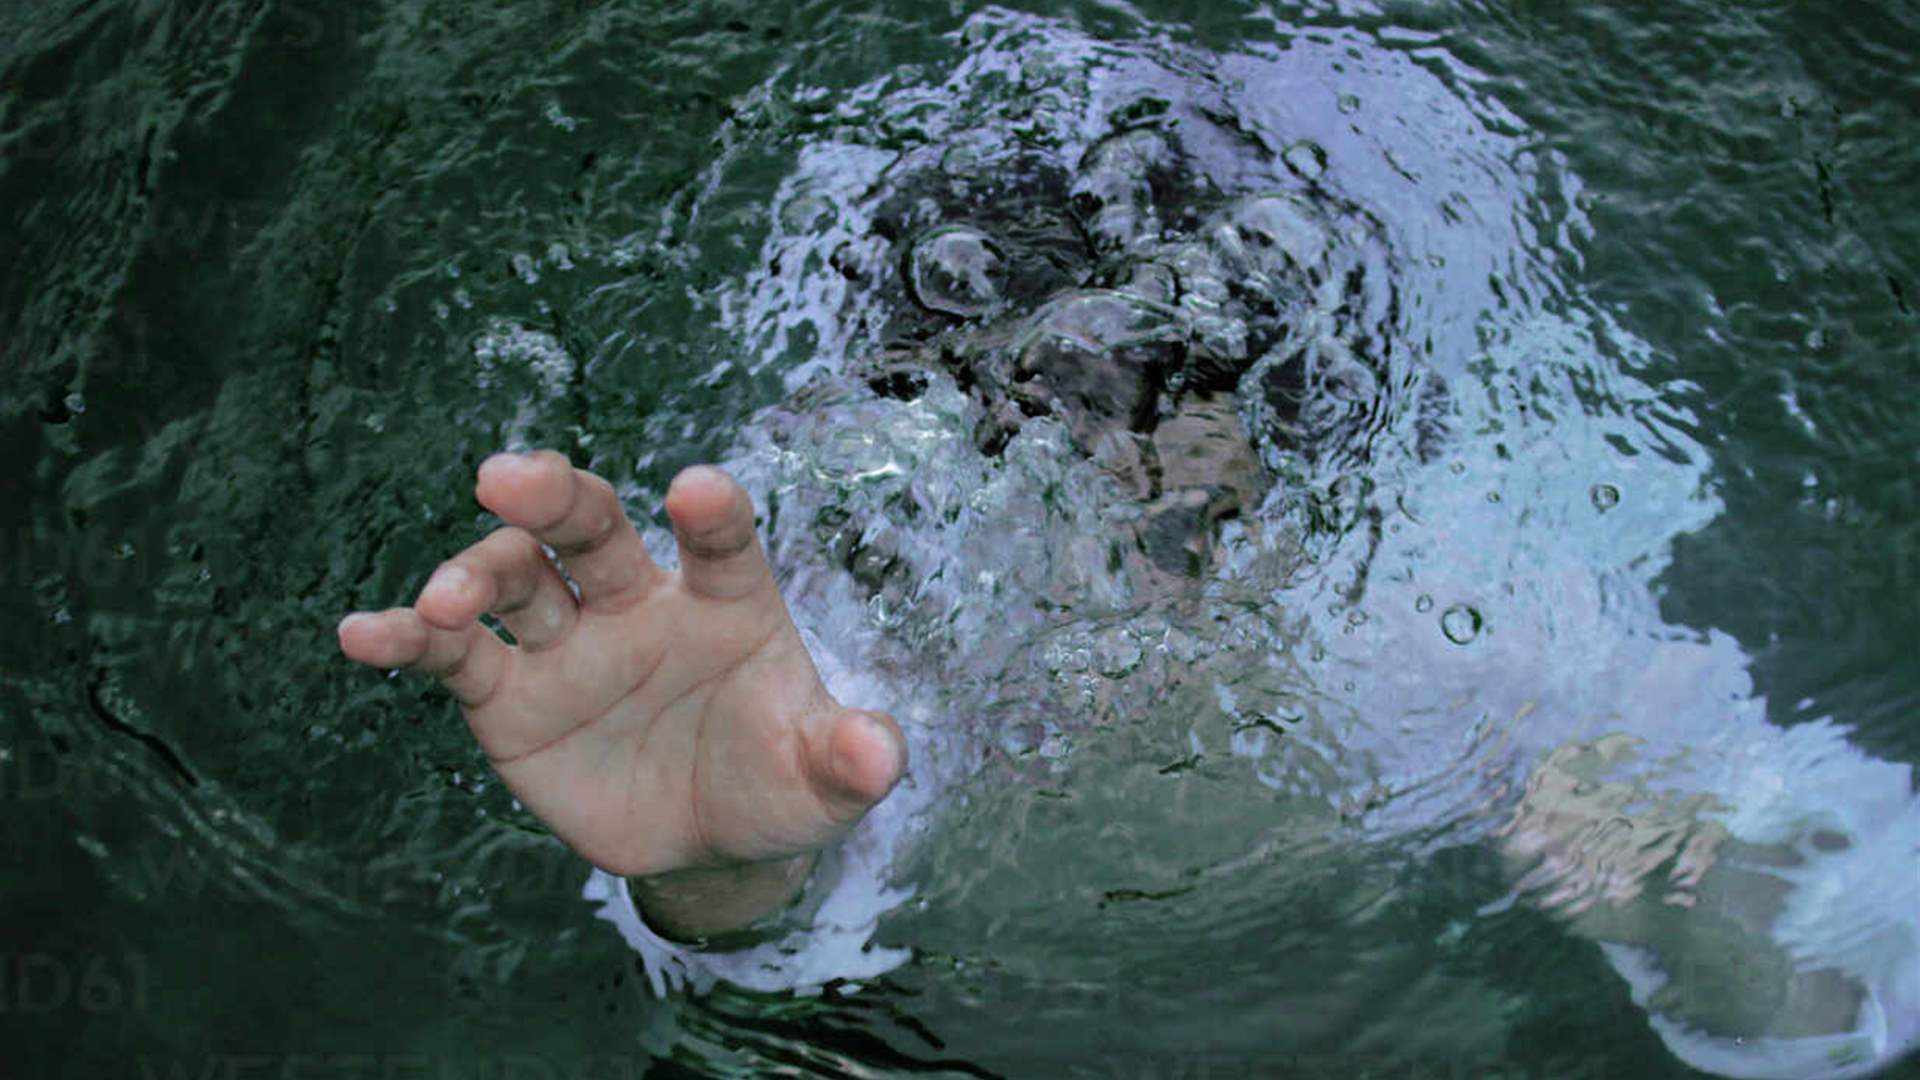 حشود تتجمع لمشاهدة رجل يغرق في نهر متجمد... وهذا ما فعلوه بدلاً من إنقاذه! (صور)